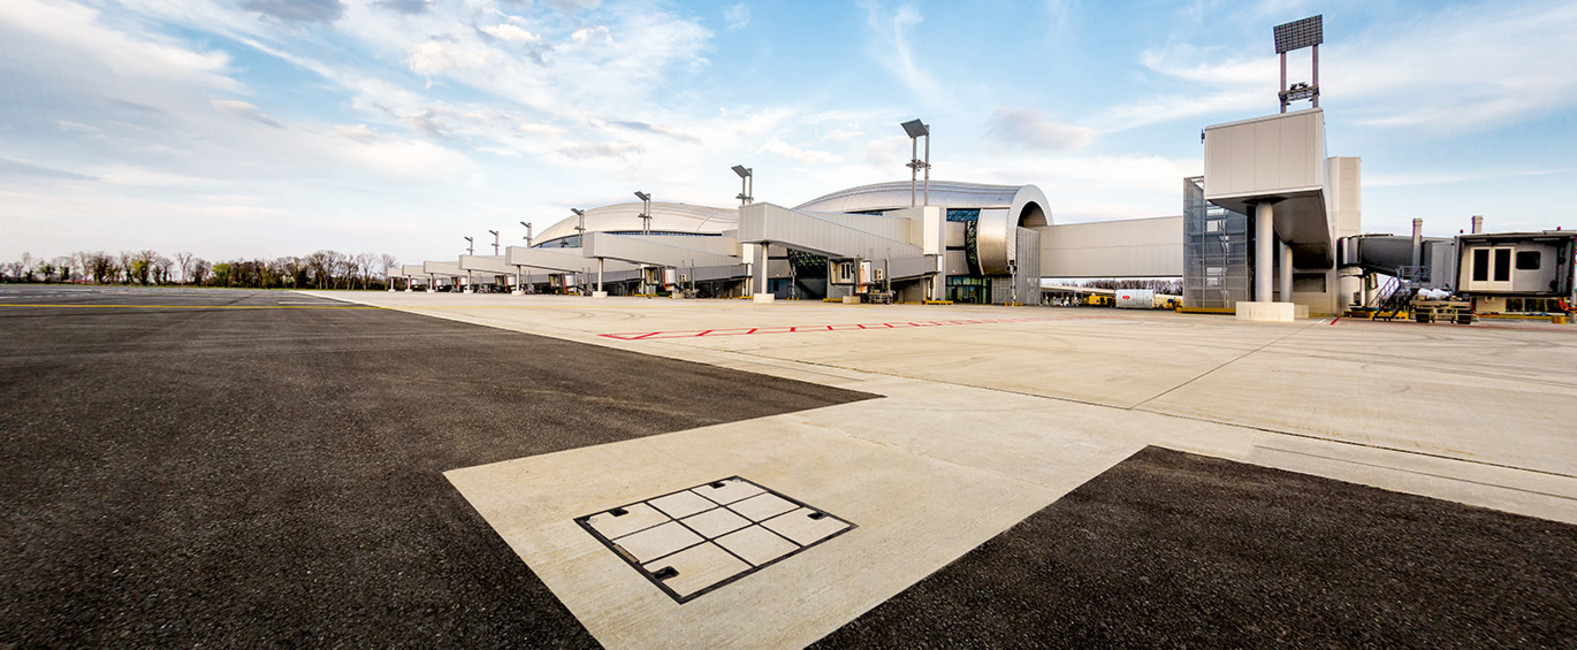 ACO Watermanagement - Luiken Op Platform Luchthaven